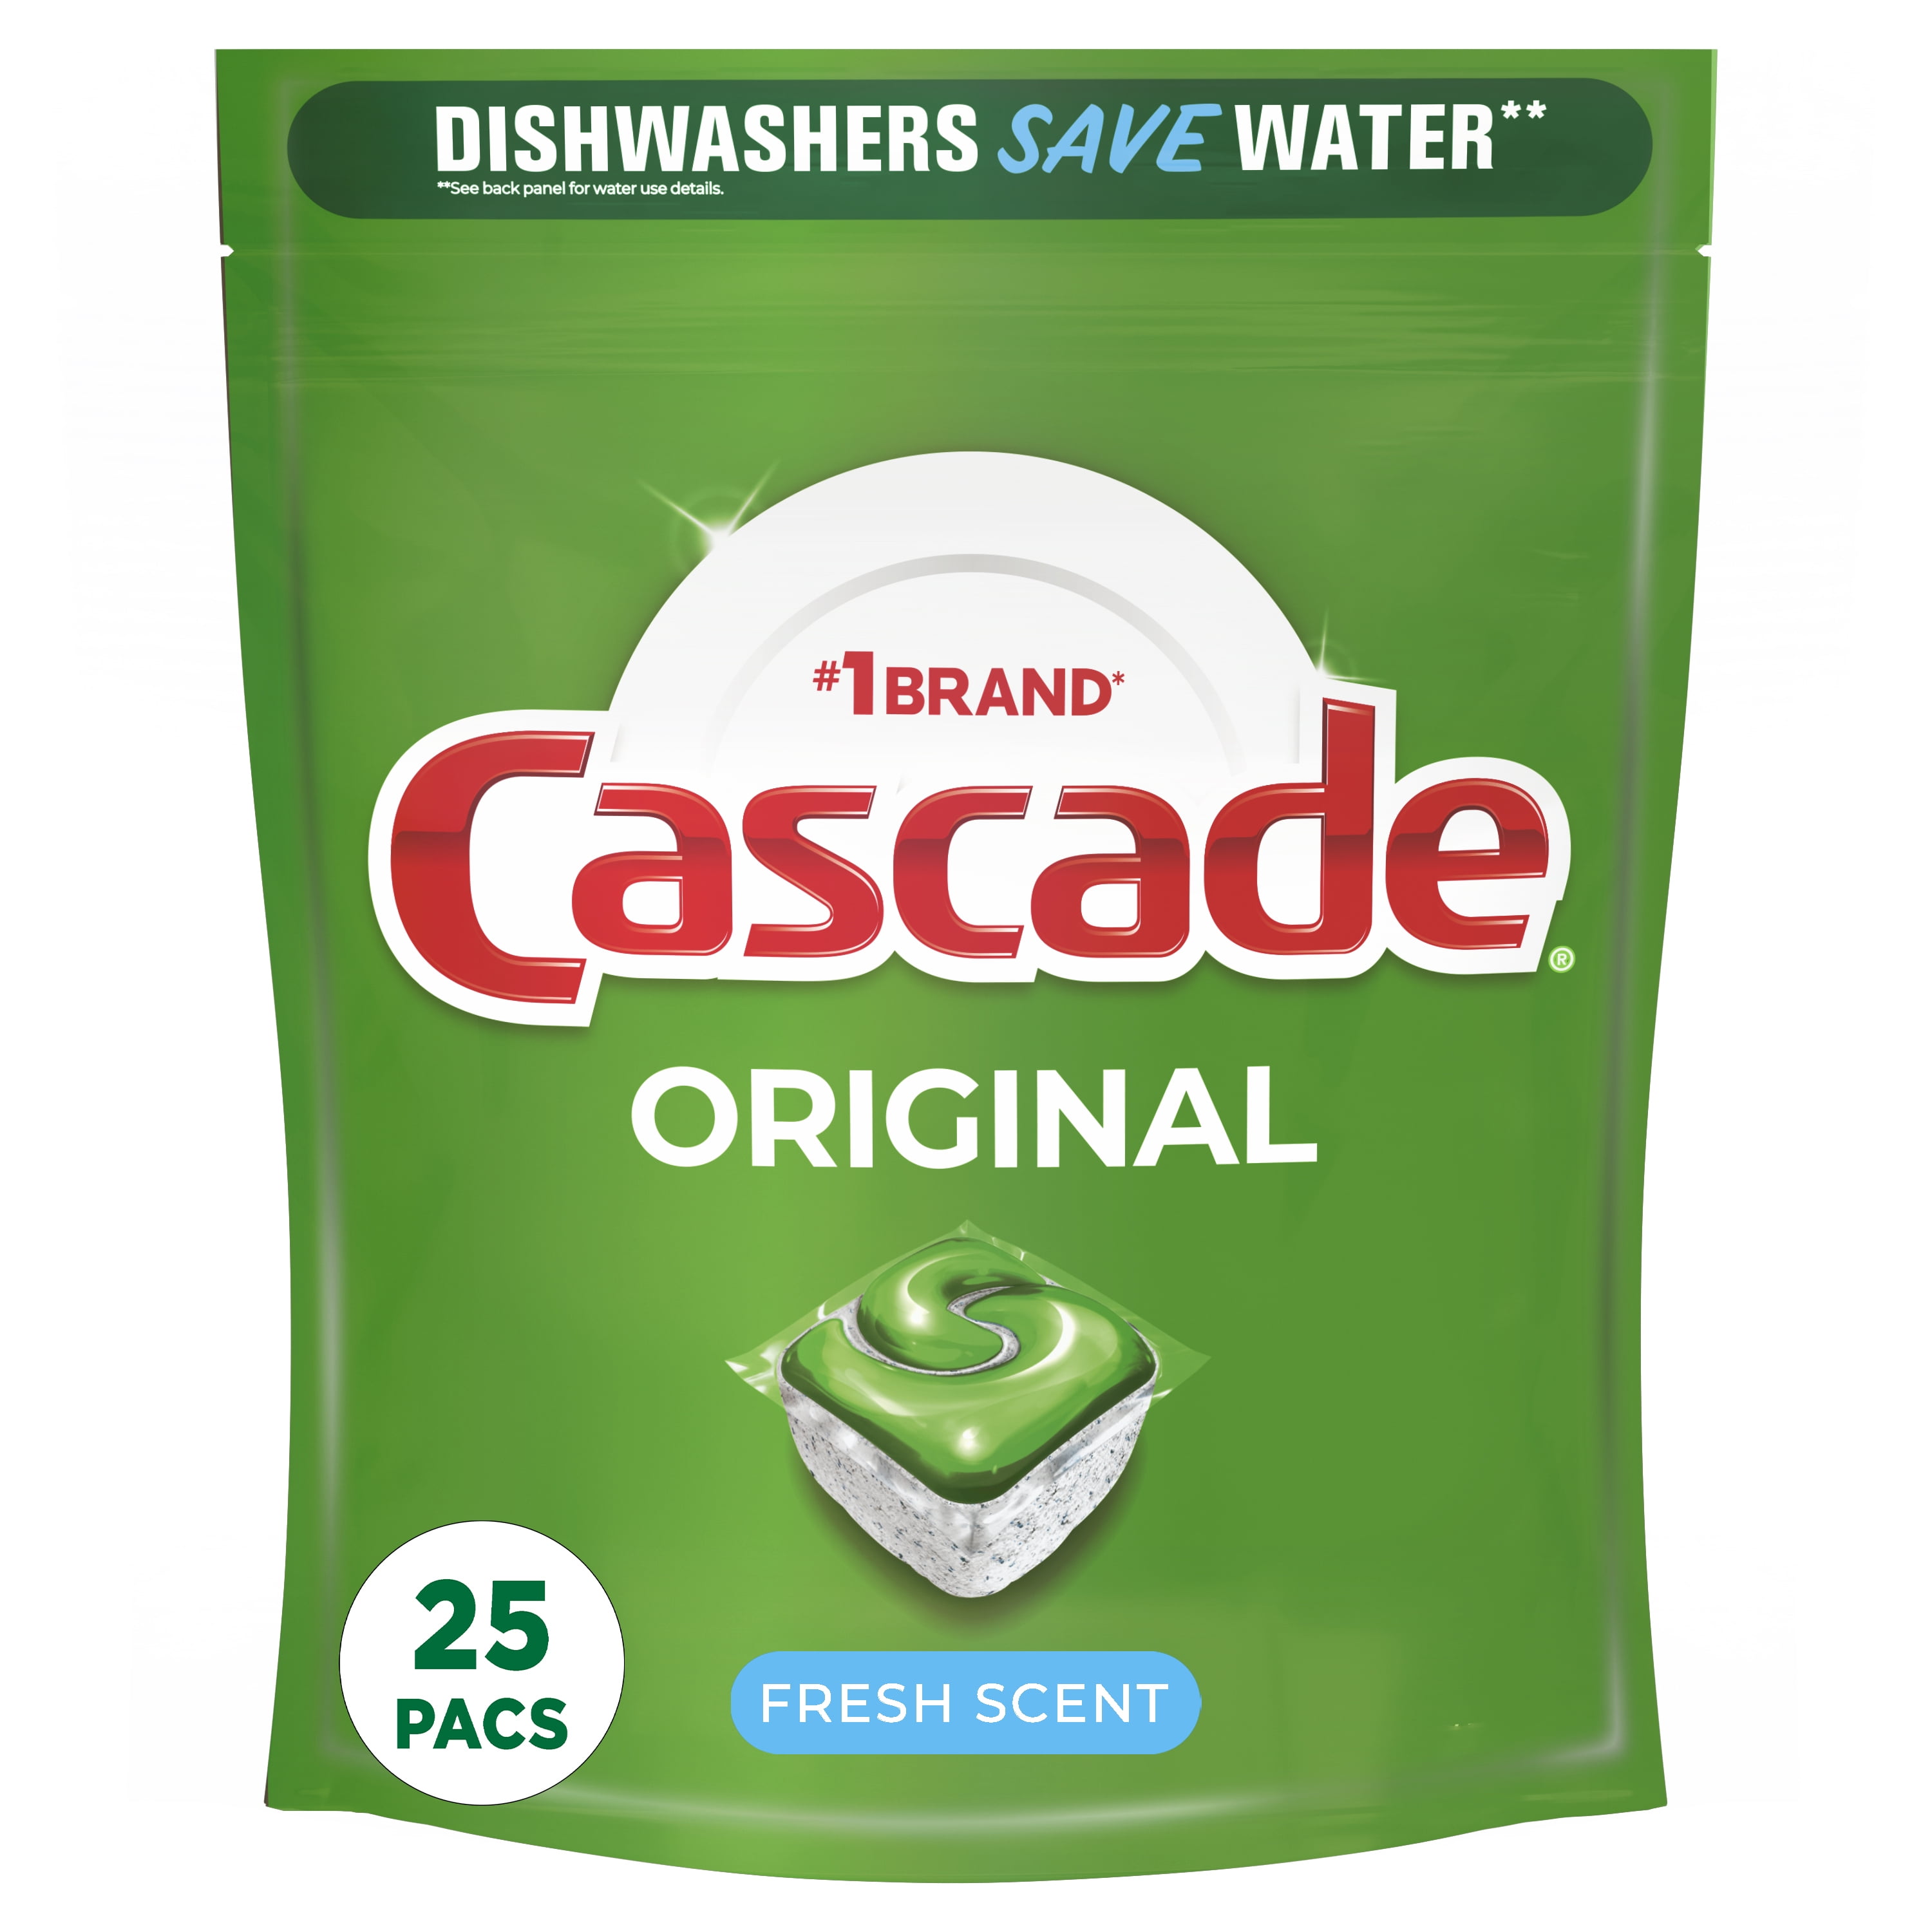 Cascade Dishwasher Detergent, Fresh Scent, Action Pacs - 20 actionpacs, 10.8 oz